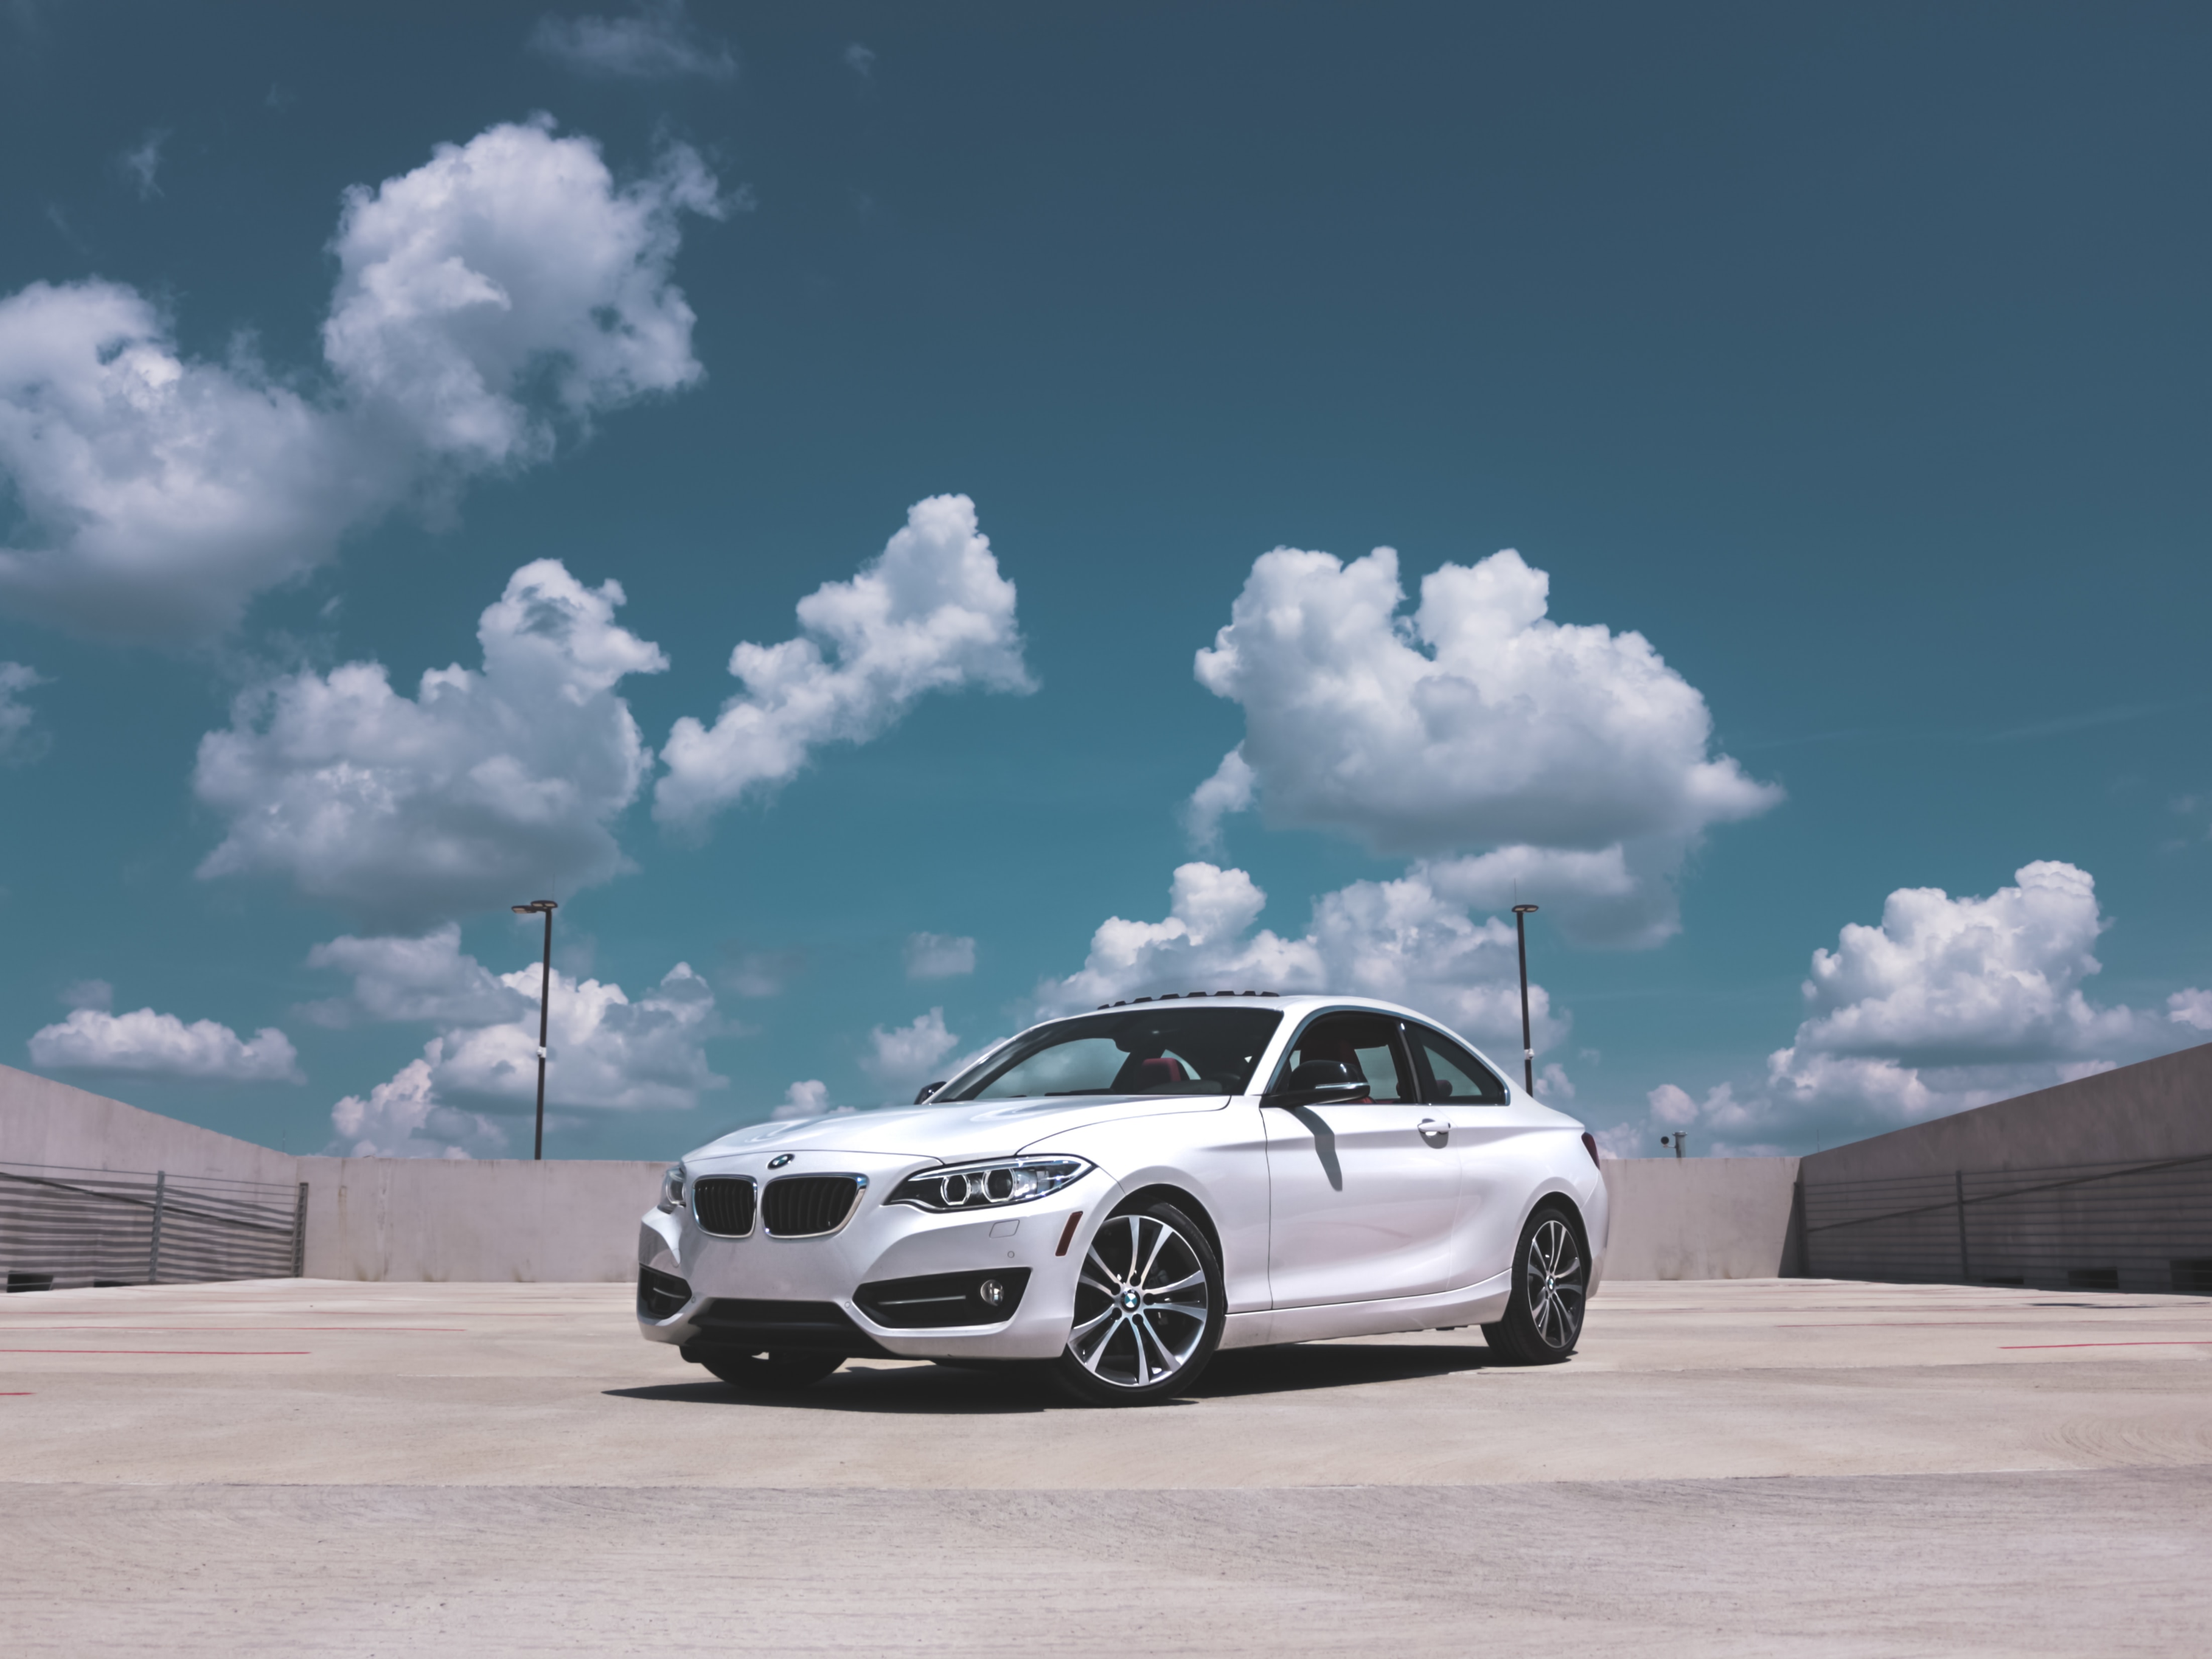 BMW Coupe Parkert på En Parkeringsplass